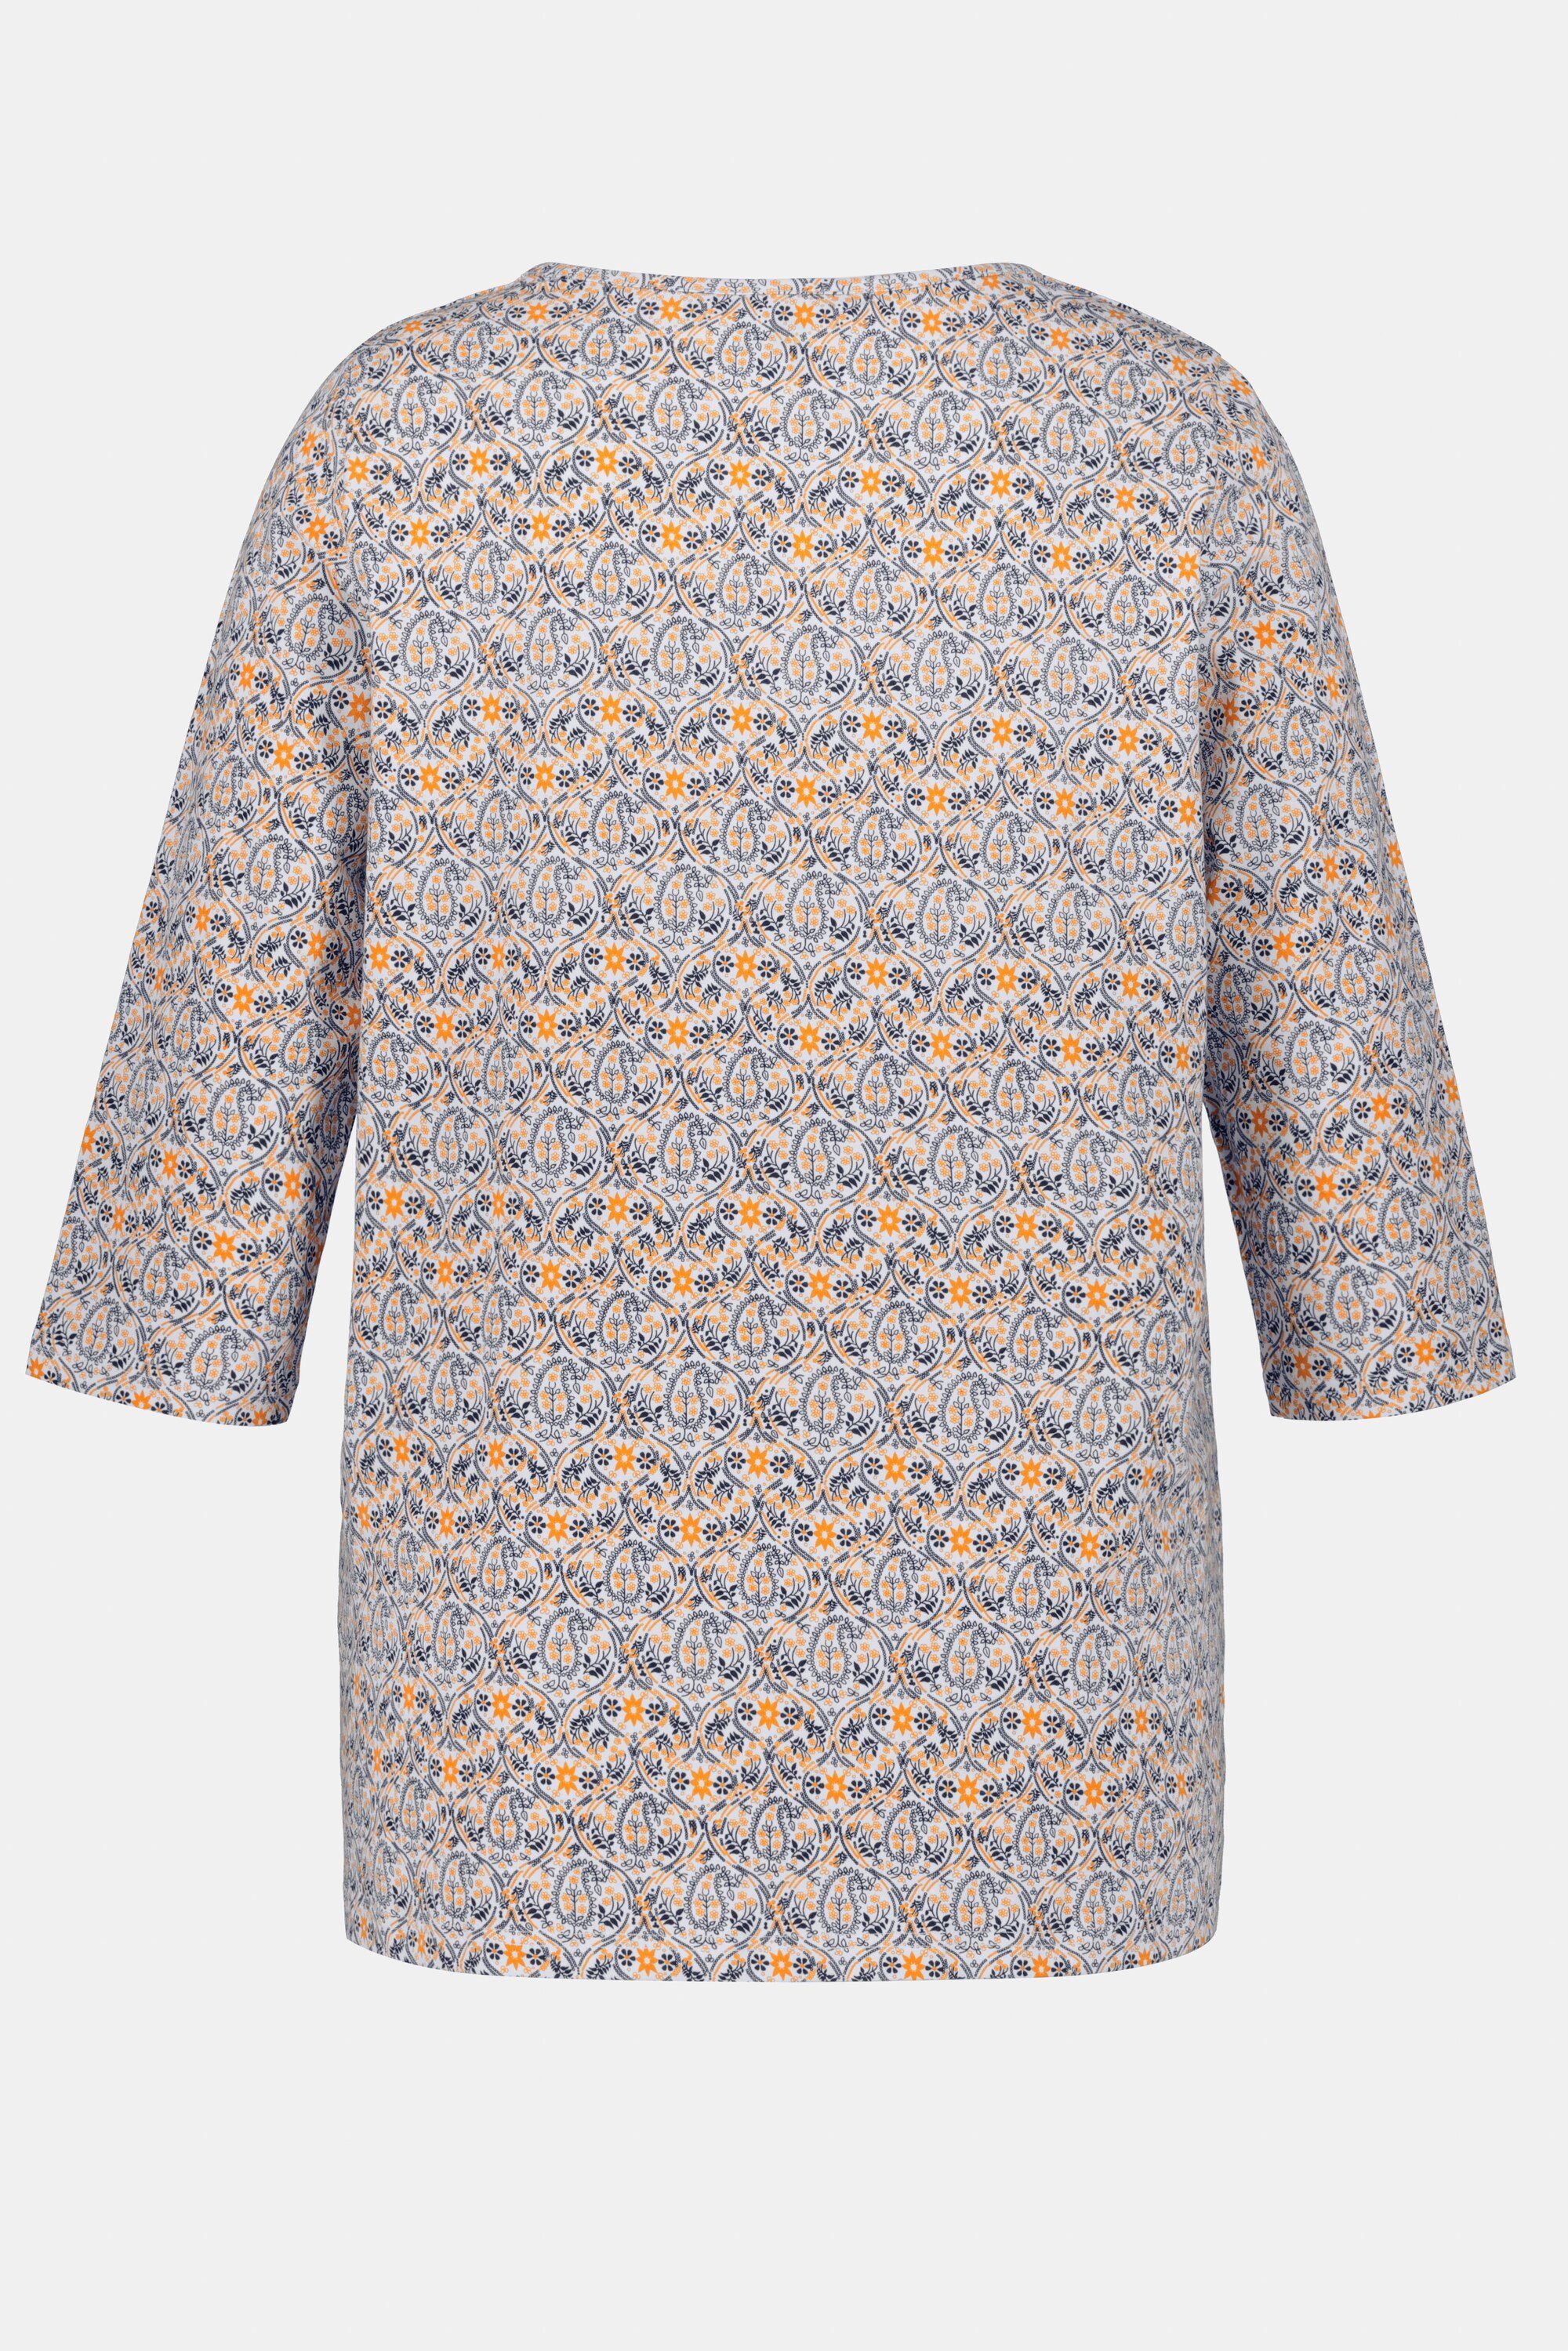 Damen Shirts Ulla Popken Rundhalsshirt Shirt Paisley-Blüten A-Linie V-Ausschnitt 3/4-Arm